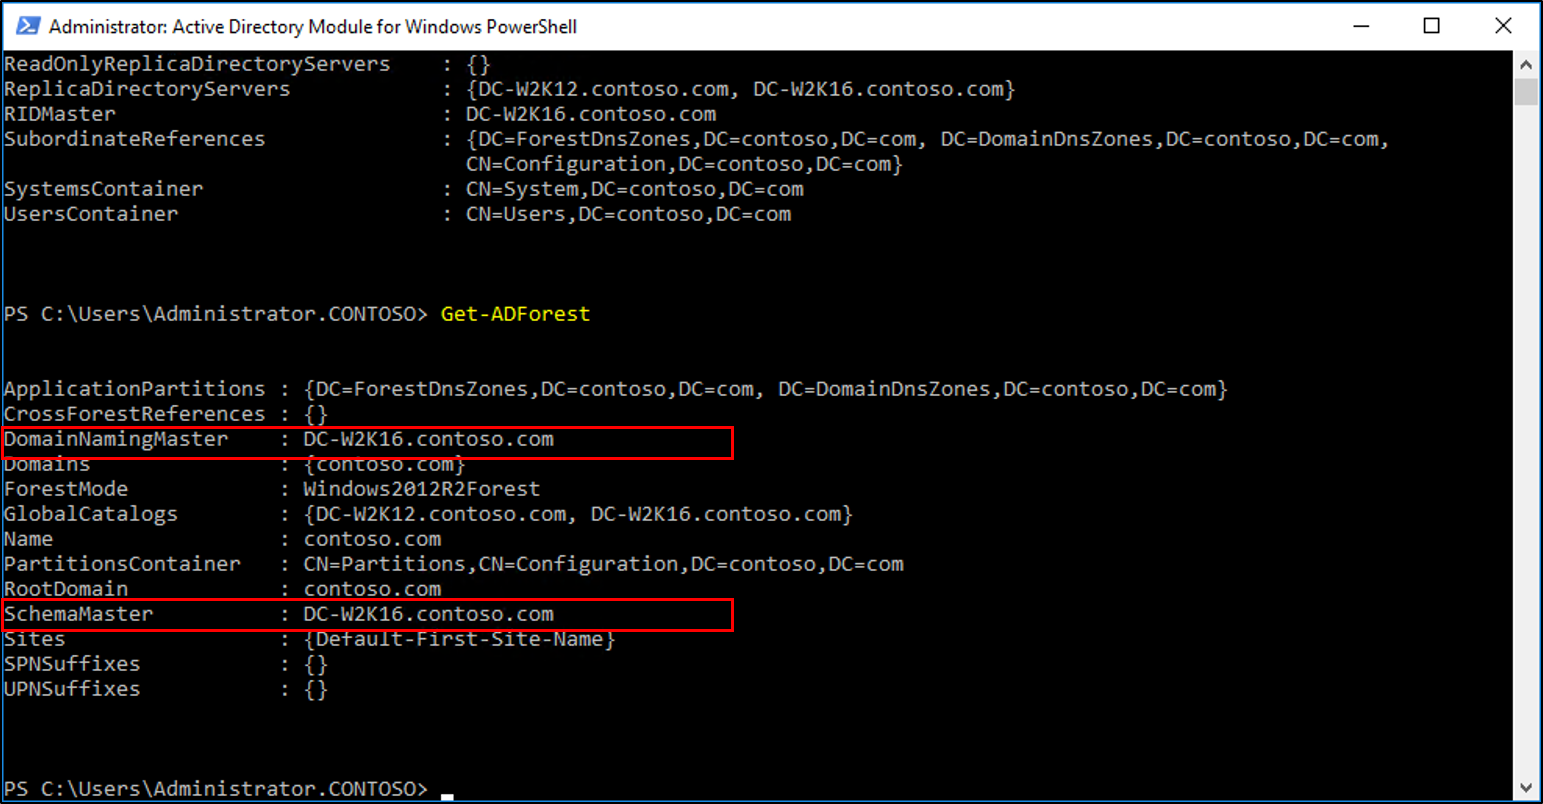 Capture d’écran de la fenêtre Module Active Directory pour Windows PowerShell montrant les résultats de l’applet de commande Get-ADForest avec les valeurs Maître d’attribution des noms de domaines et Contrôleur de schéma mises en évidence.